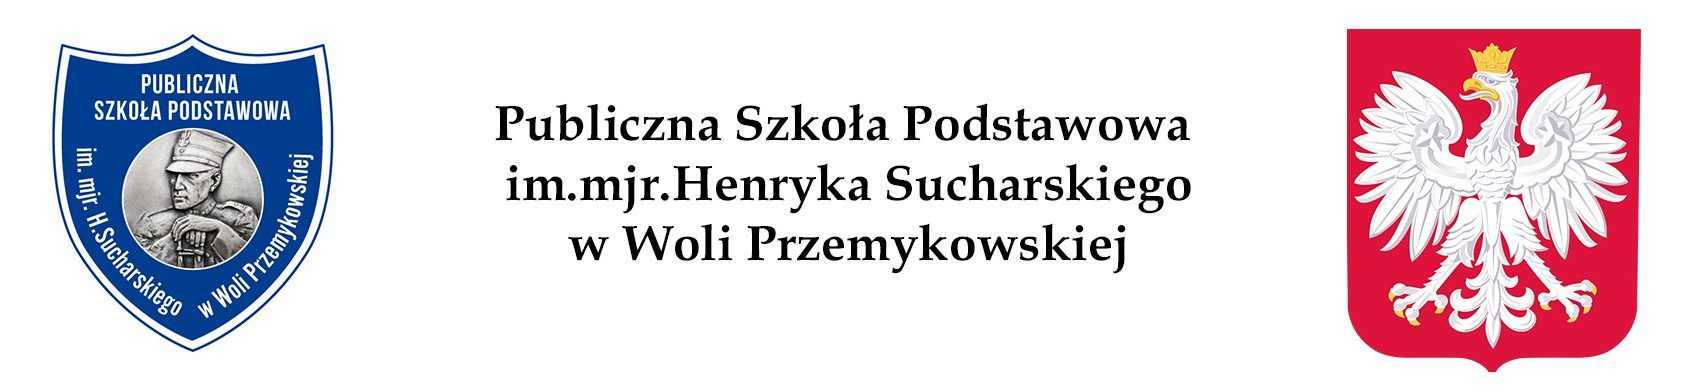 Publiczna Szkoła Podstawowa im.mjr.H.Sucharskiego w Woli Przemykowskiej